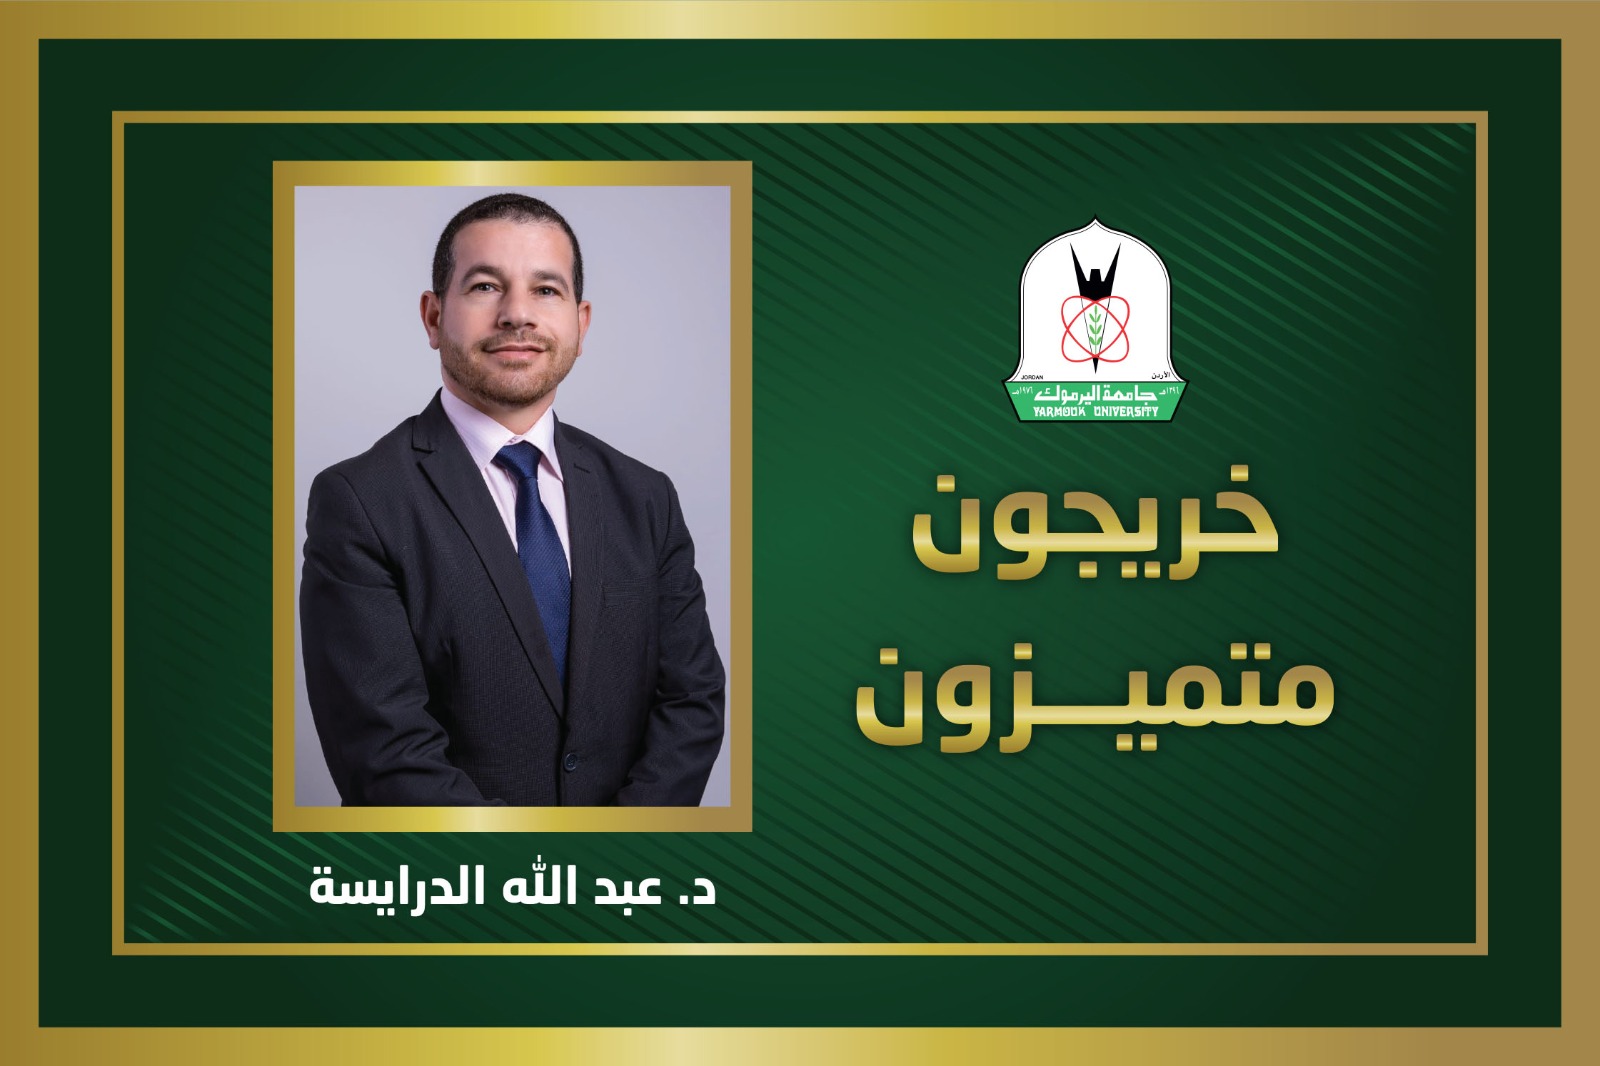 عبد الله الدرايسة.. خريج من "اليرموك" يفوز بجائزة راشد بن حميد للثقافة والعلوم بالإمارات